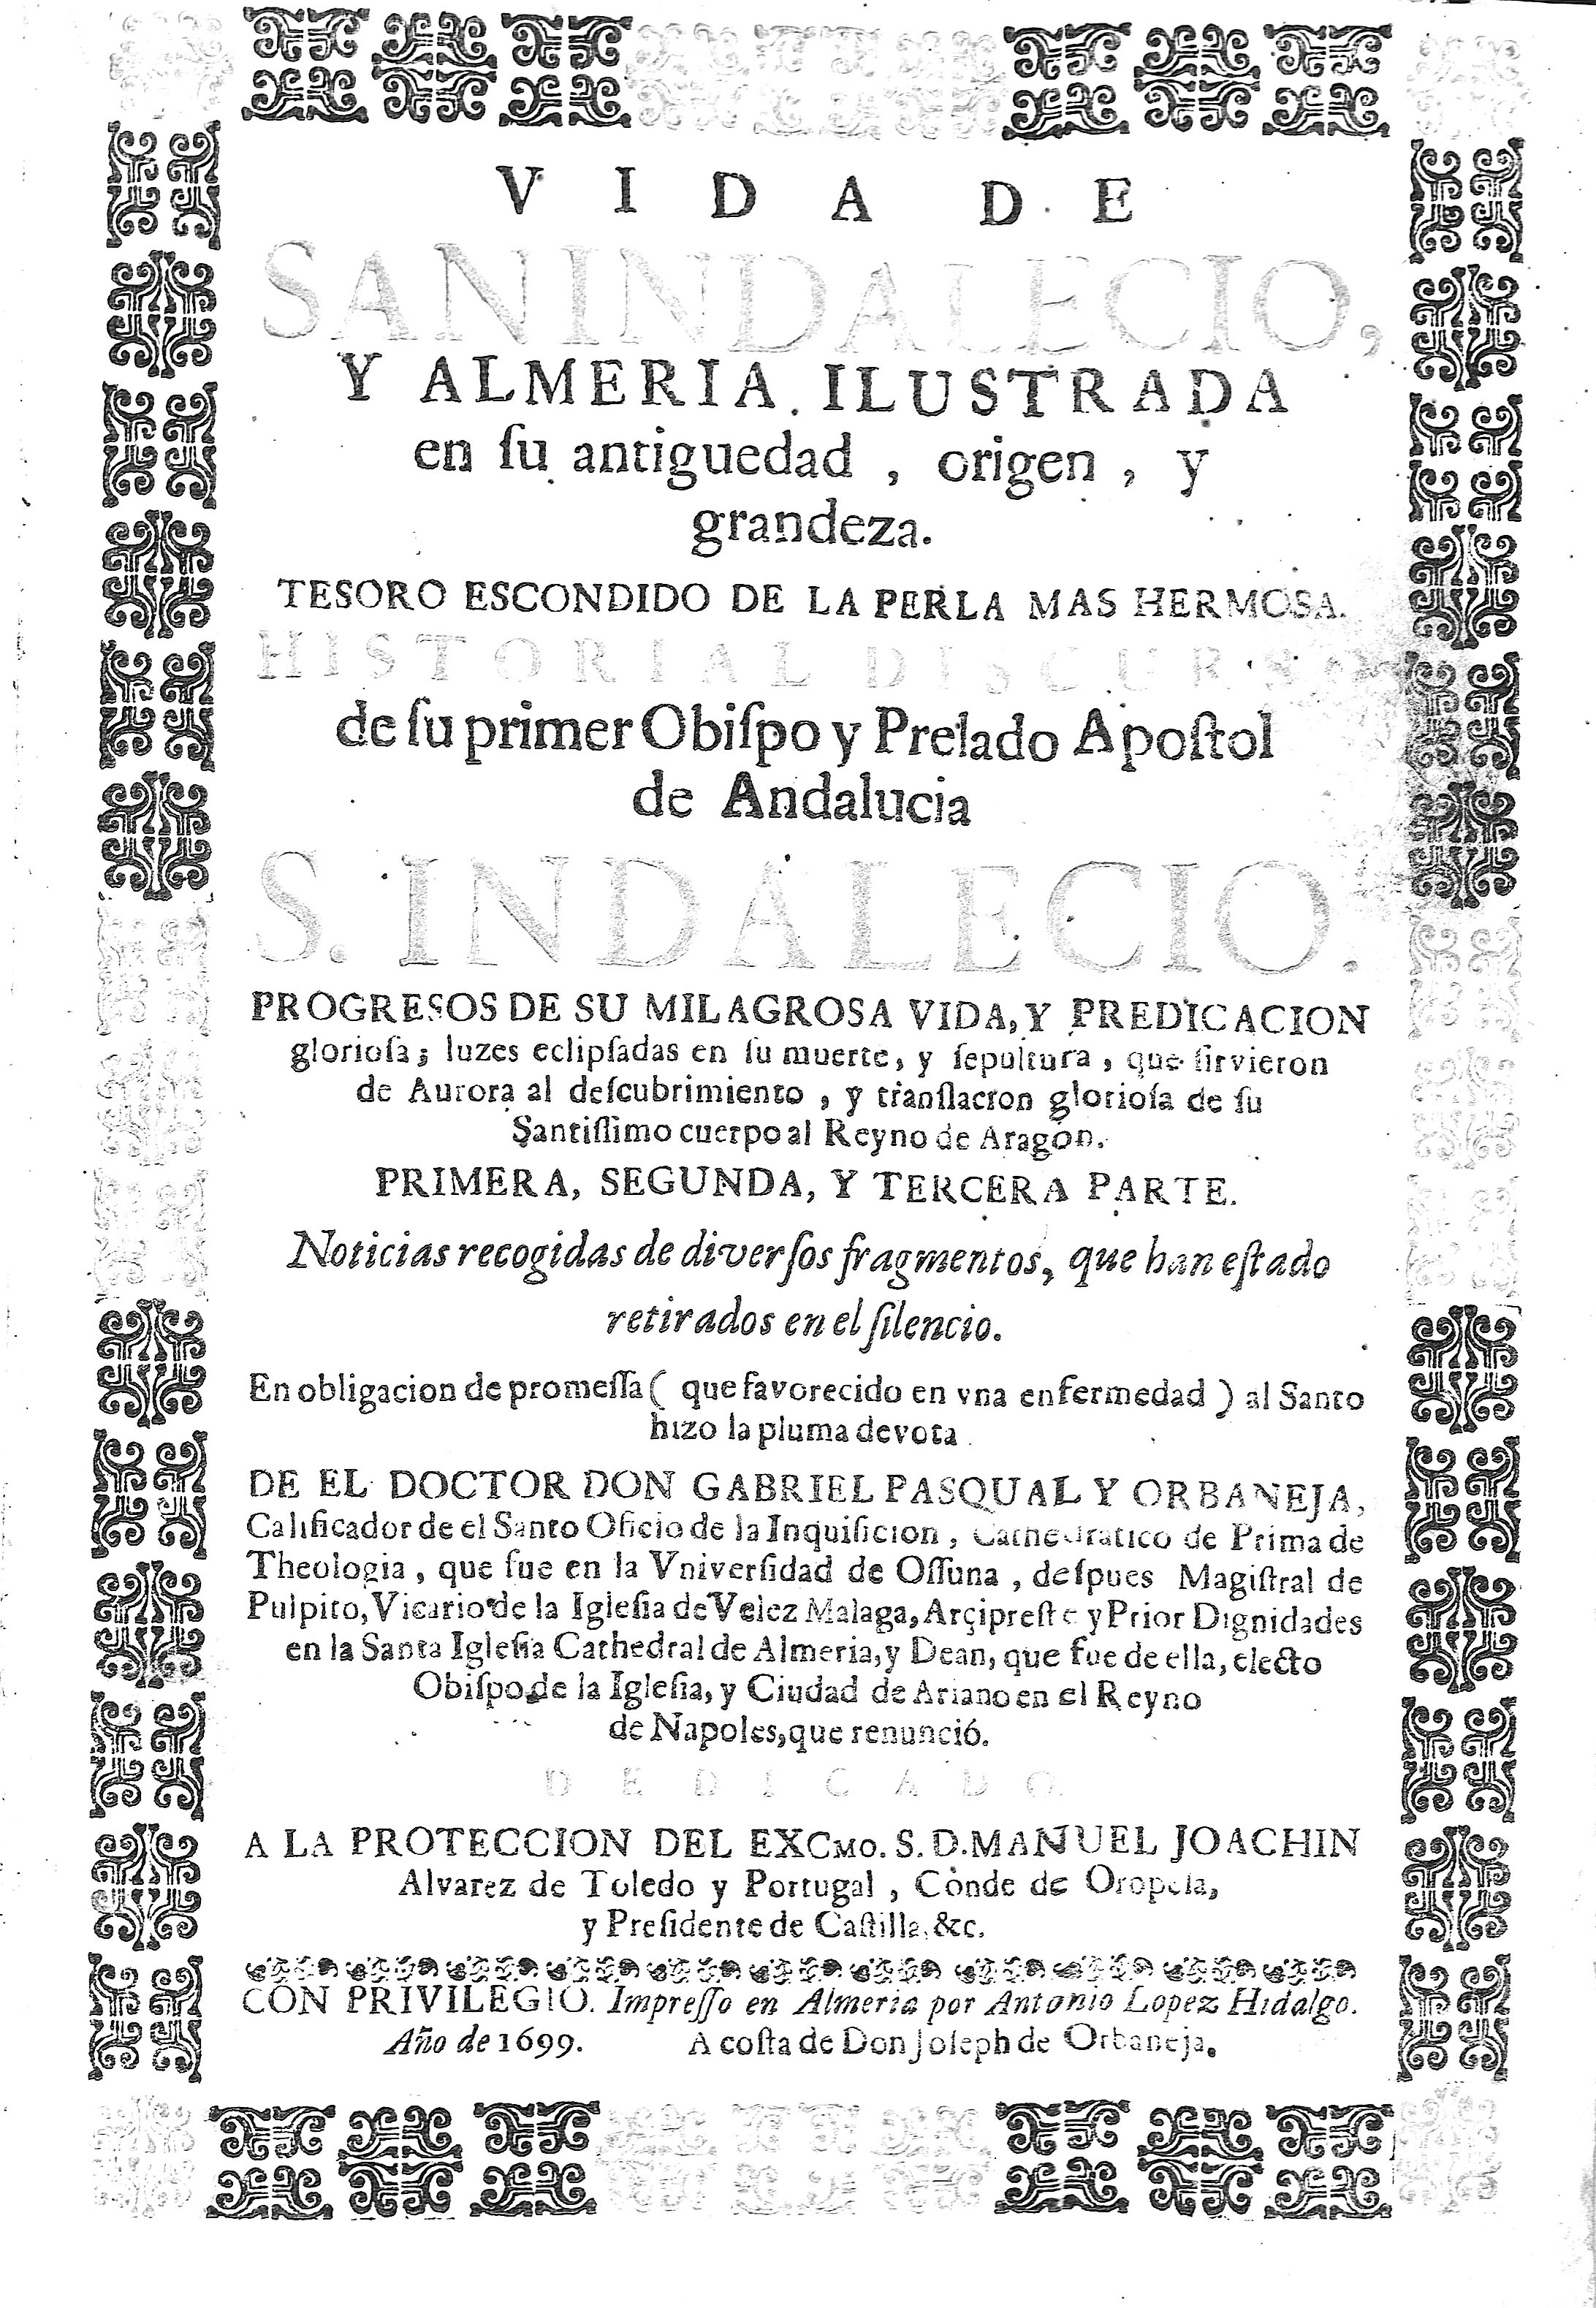 Vida de San Indalecio, y Almeria ilustrada en su antiguedad,...